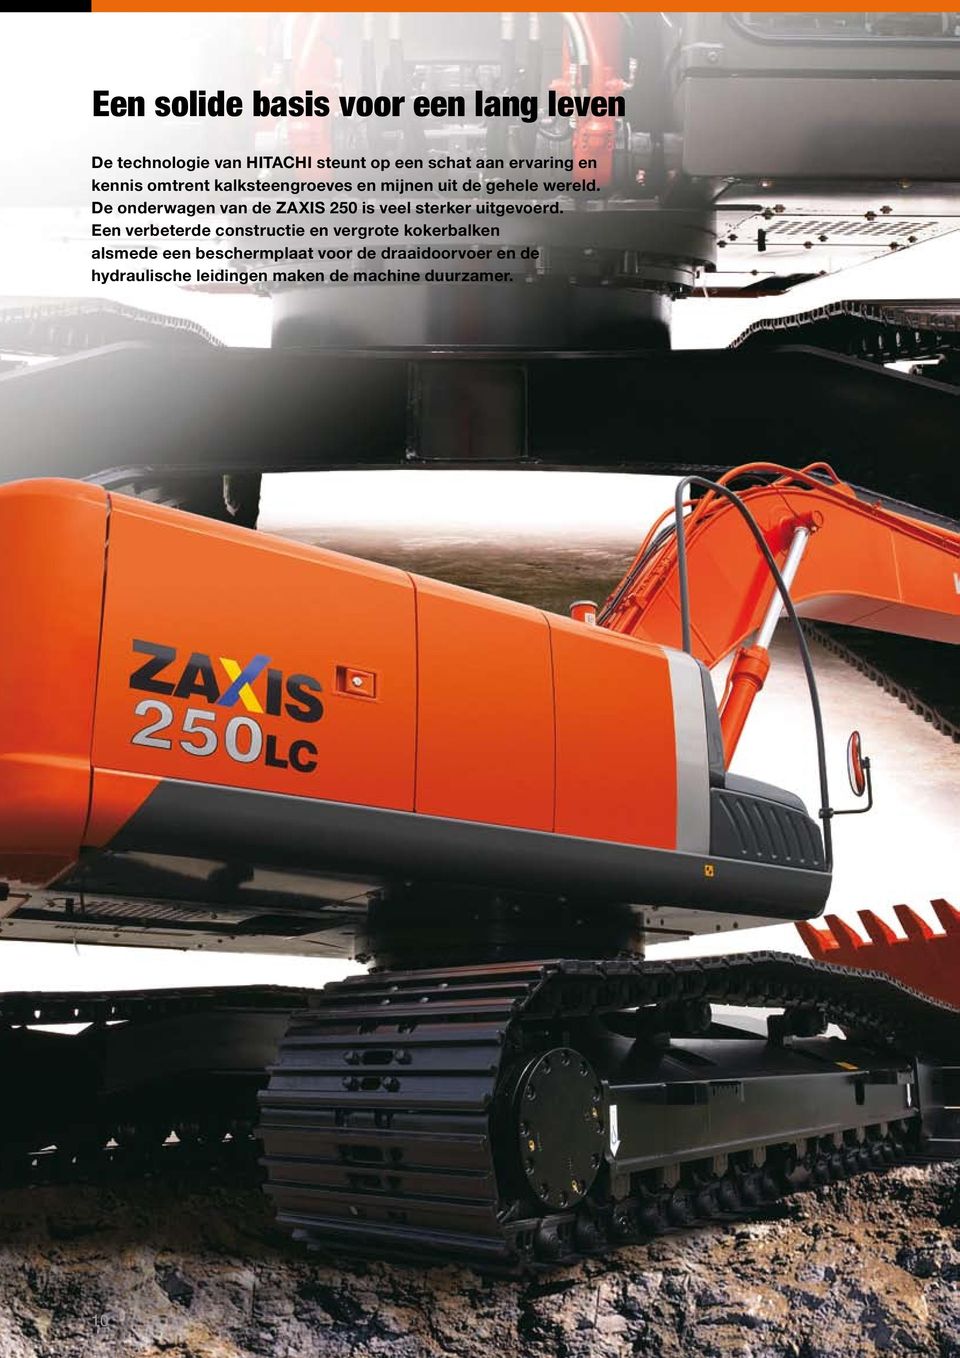 De onderwagen van de ZAXIS 250 is veel sterker uitgevoerd.